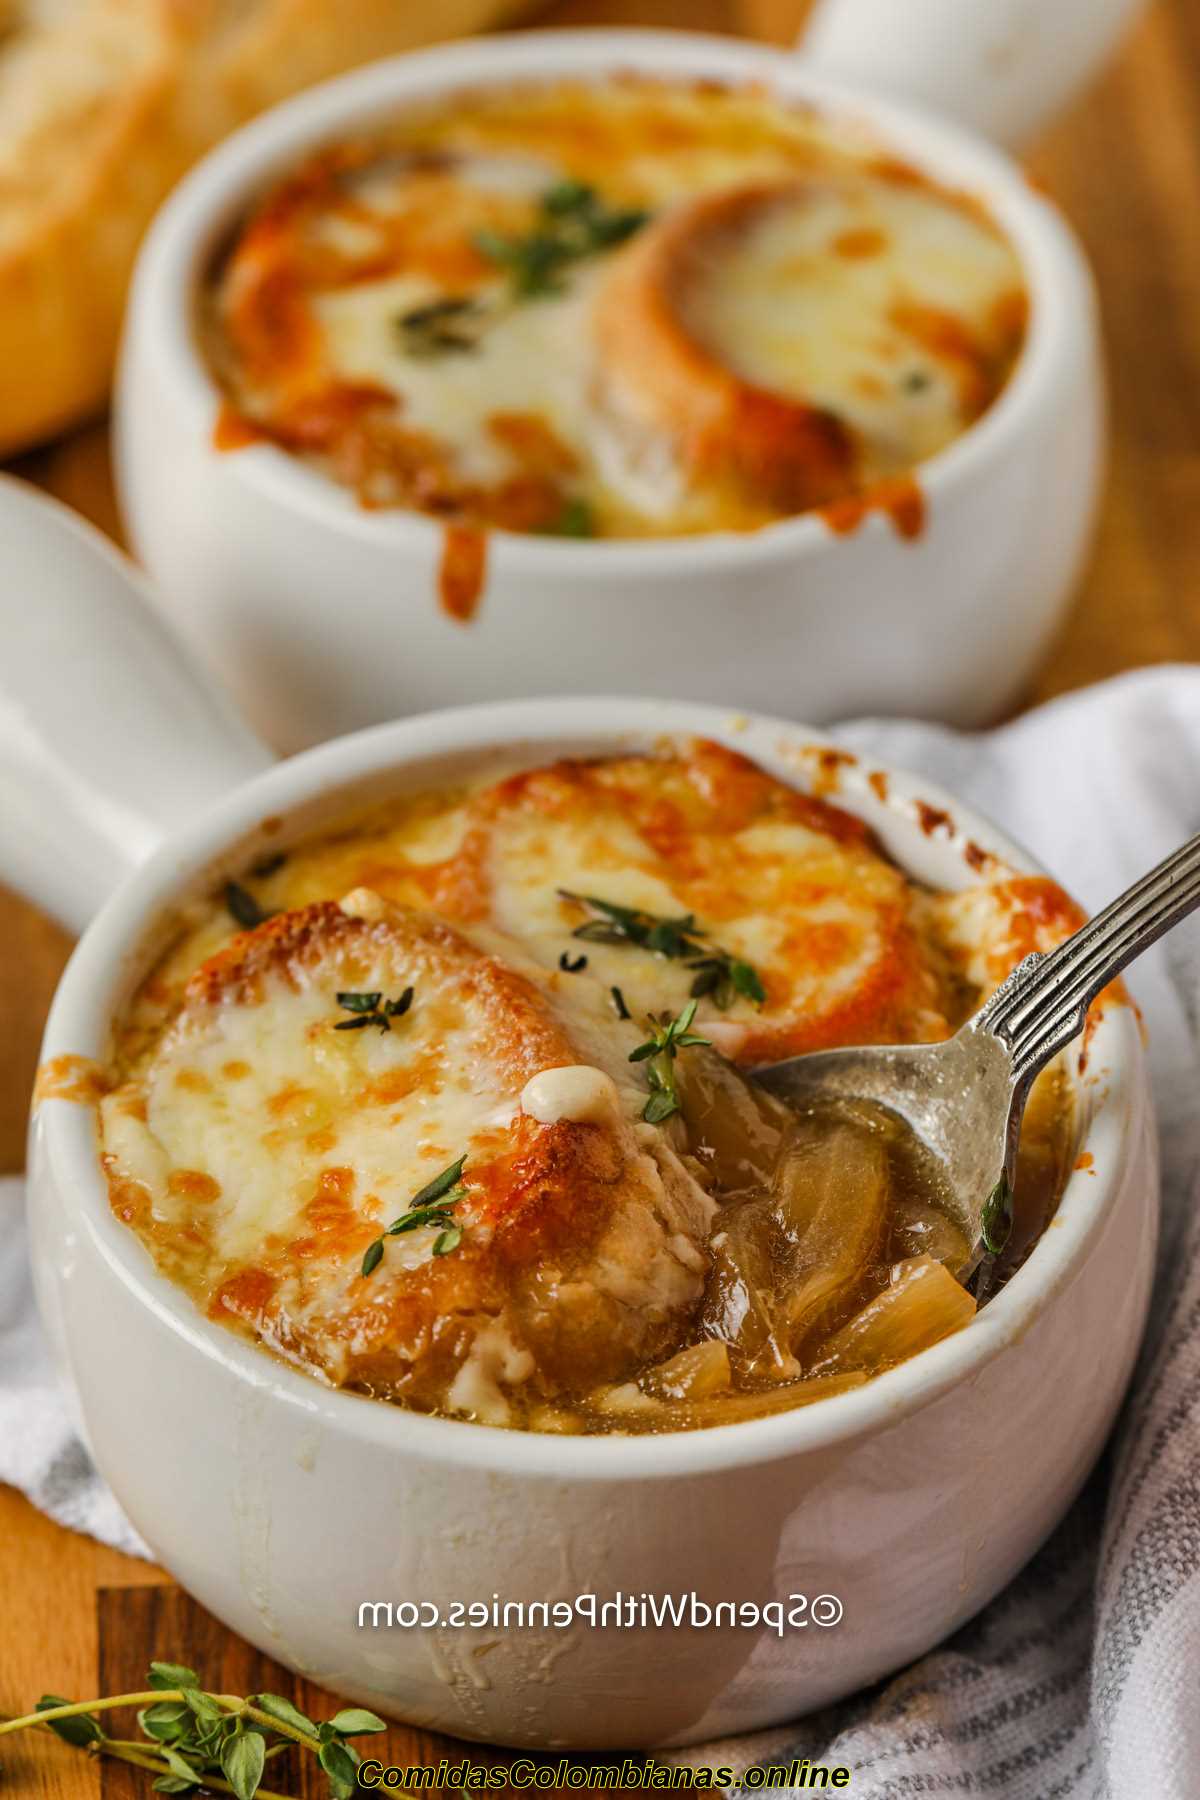 tazze di zuppa di cipolle francese fatta in casa con un cucchiaio in uno